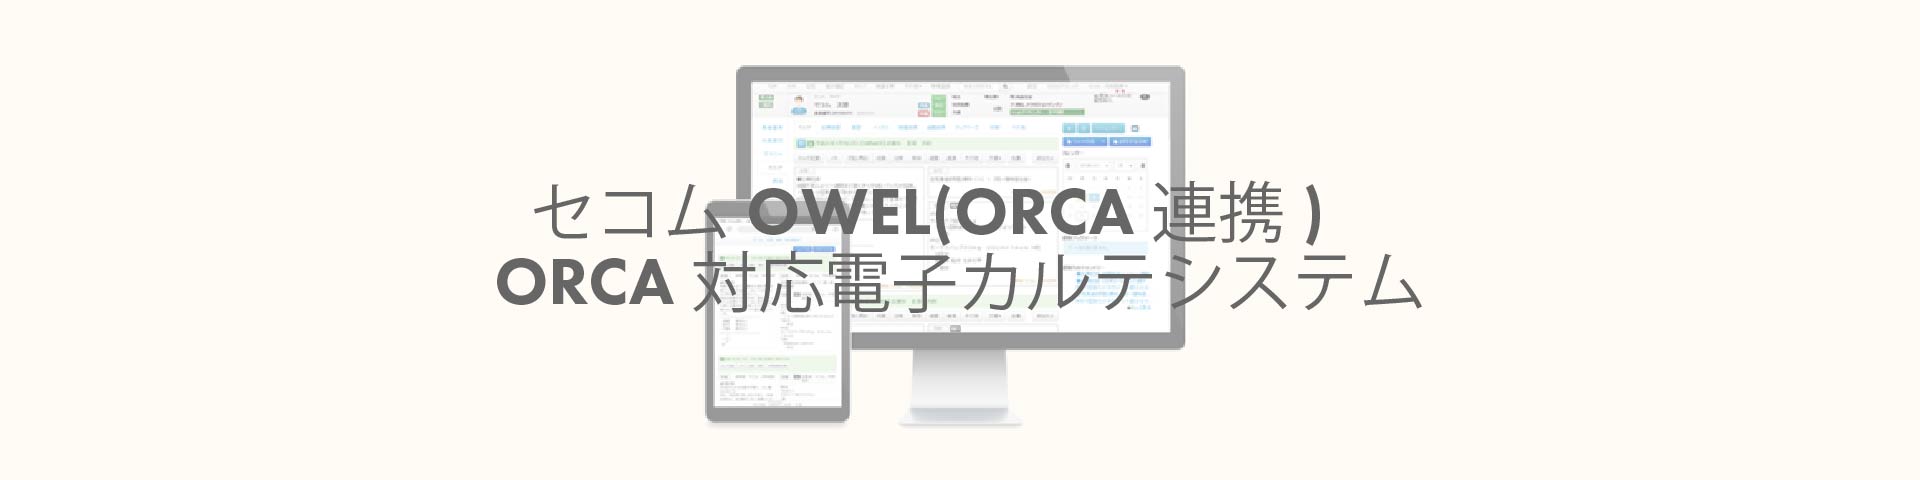 セコムOWEL(ORCA連携)<br>ORCA対応電子カルテシステム